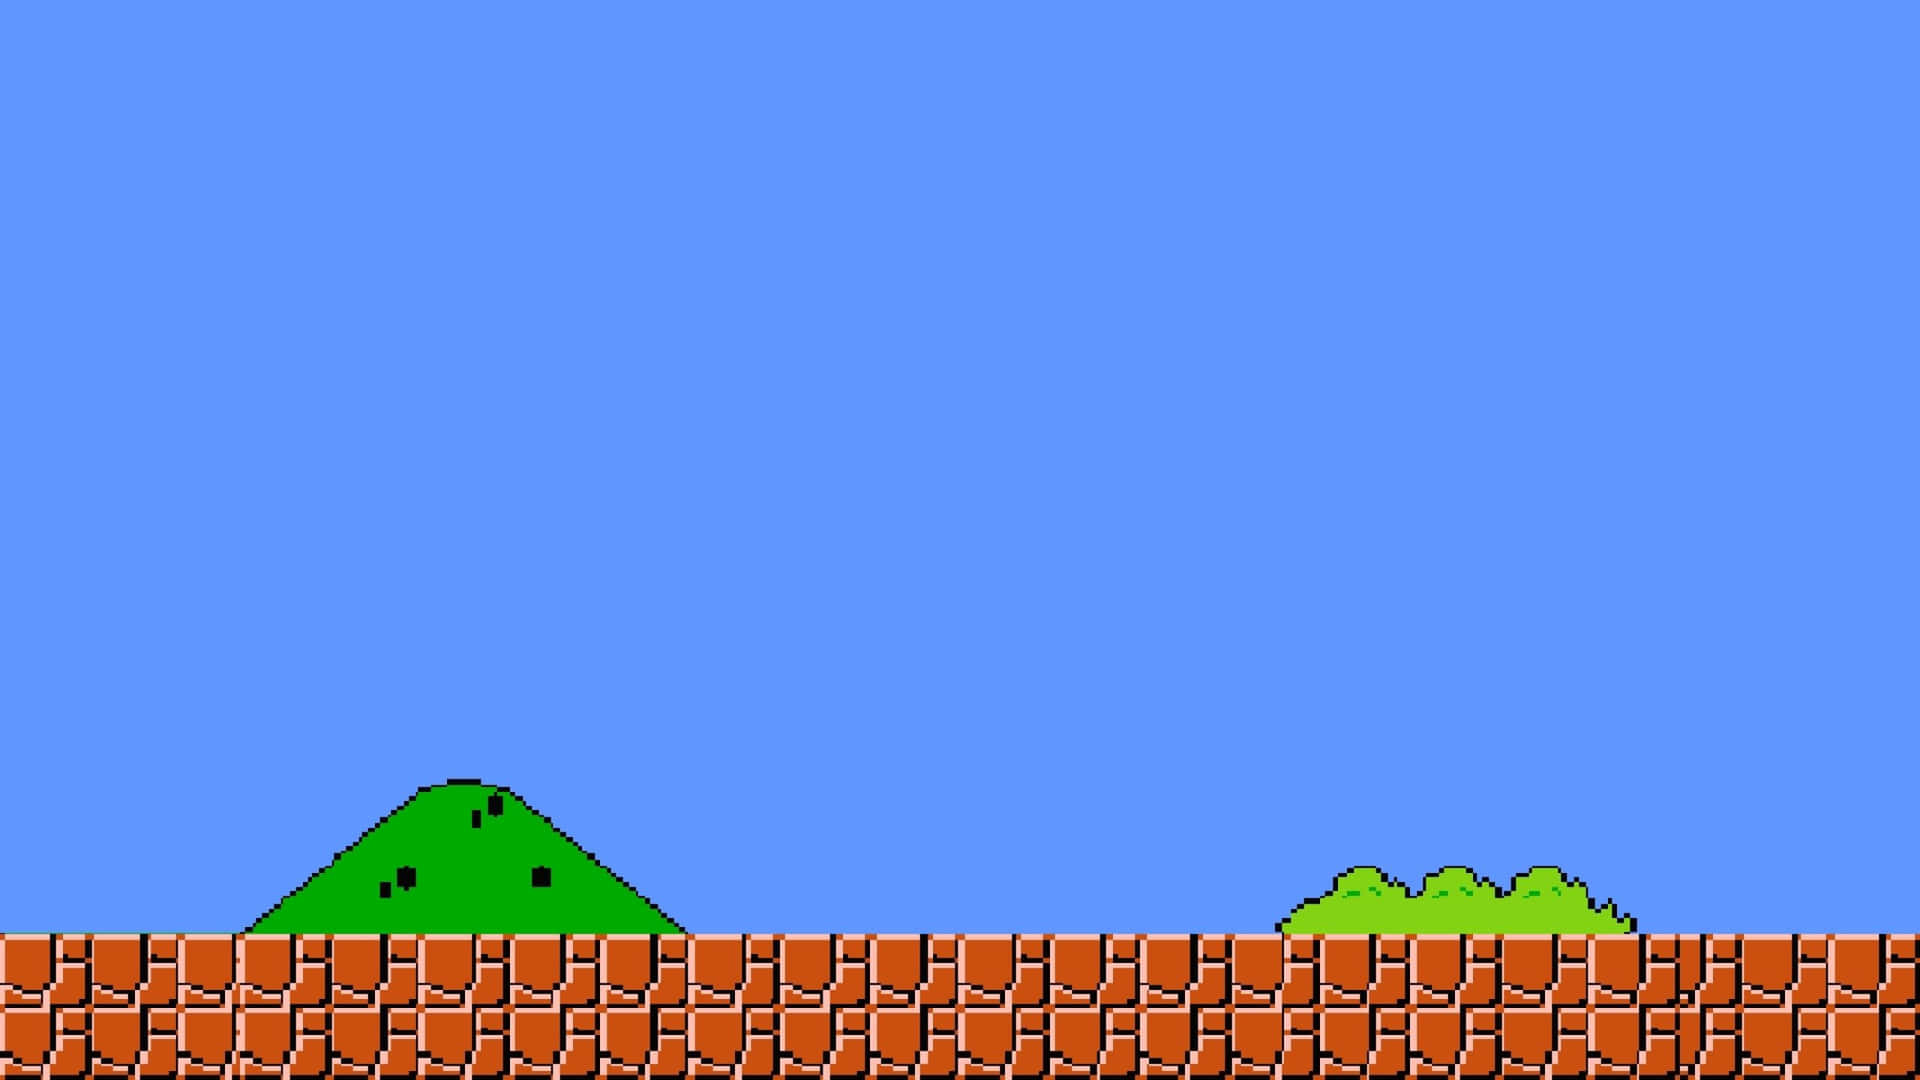 Sumérgeteen El Mundo Clásico Retro Con Mario De 8 Bits. Fondo de pantalla